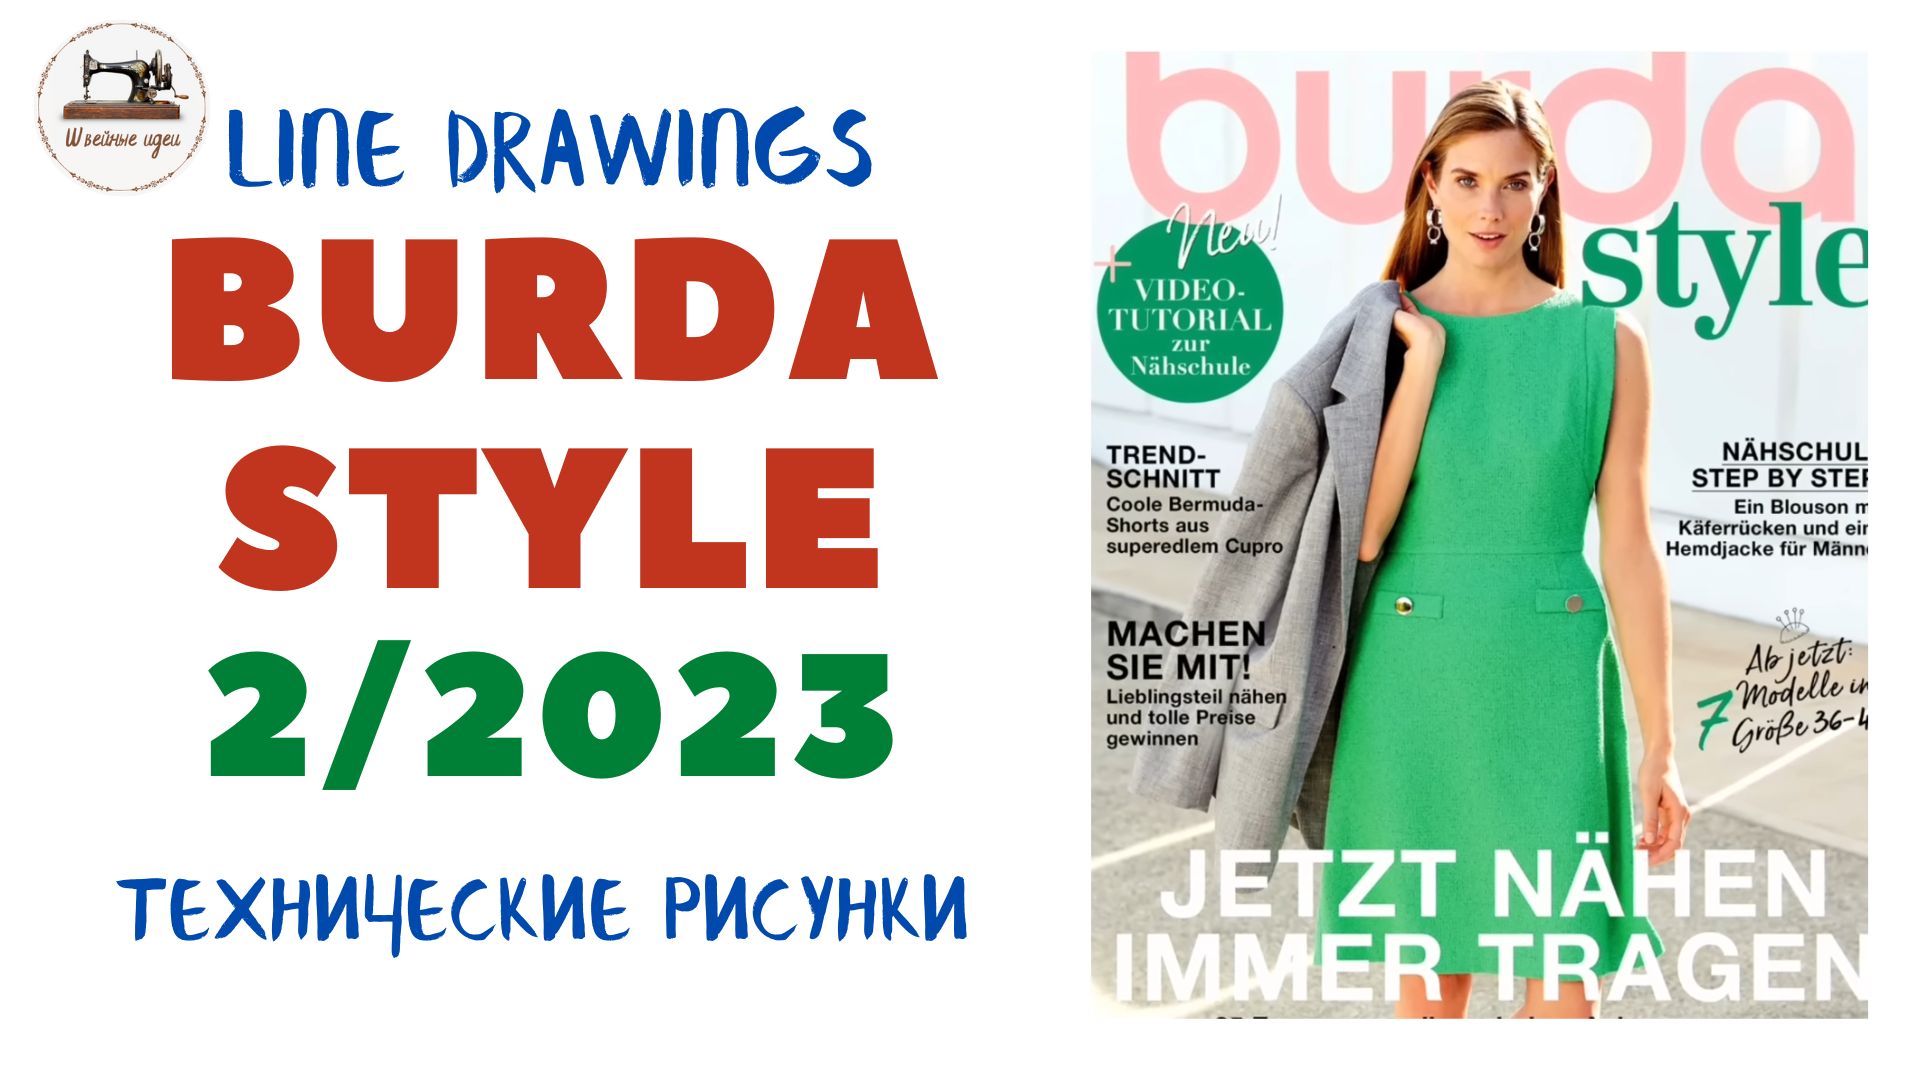 Burda STYLE 2/2023 Line Drawings. Технические рисунки. Спортивная мода, деловой стиль, мужская мода